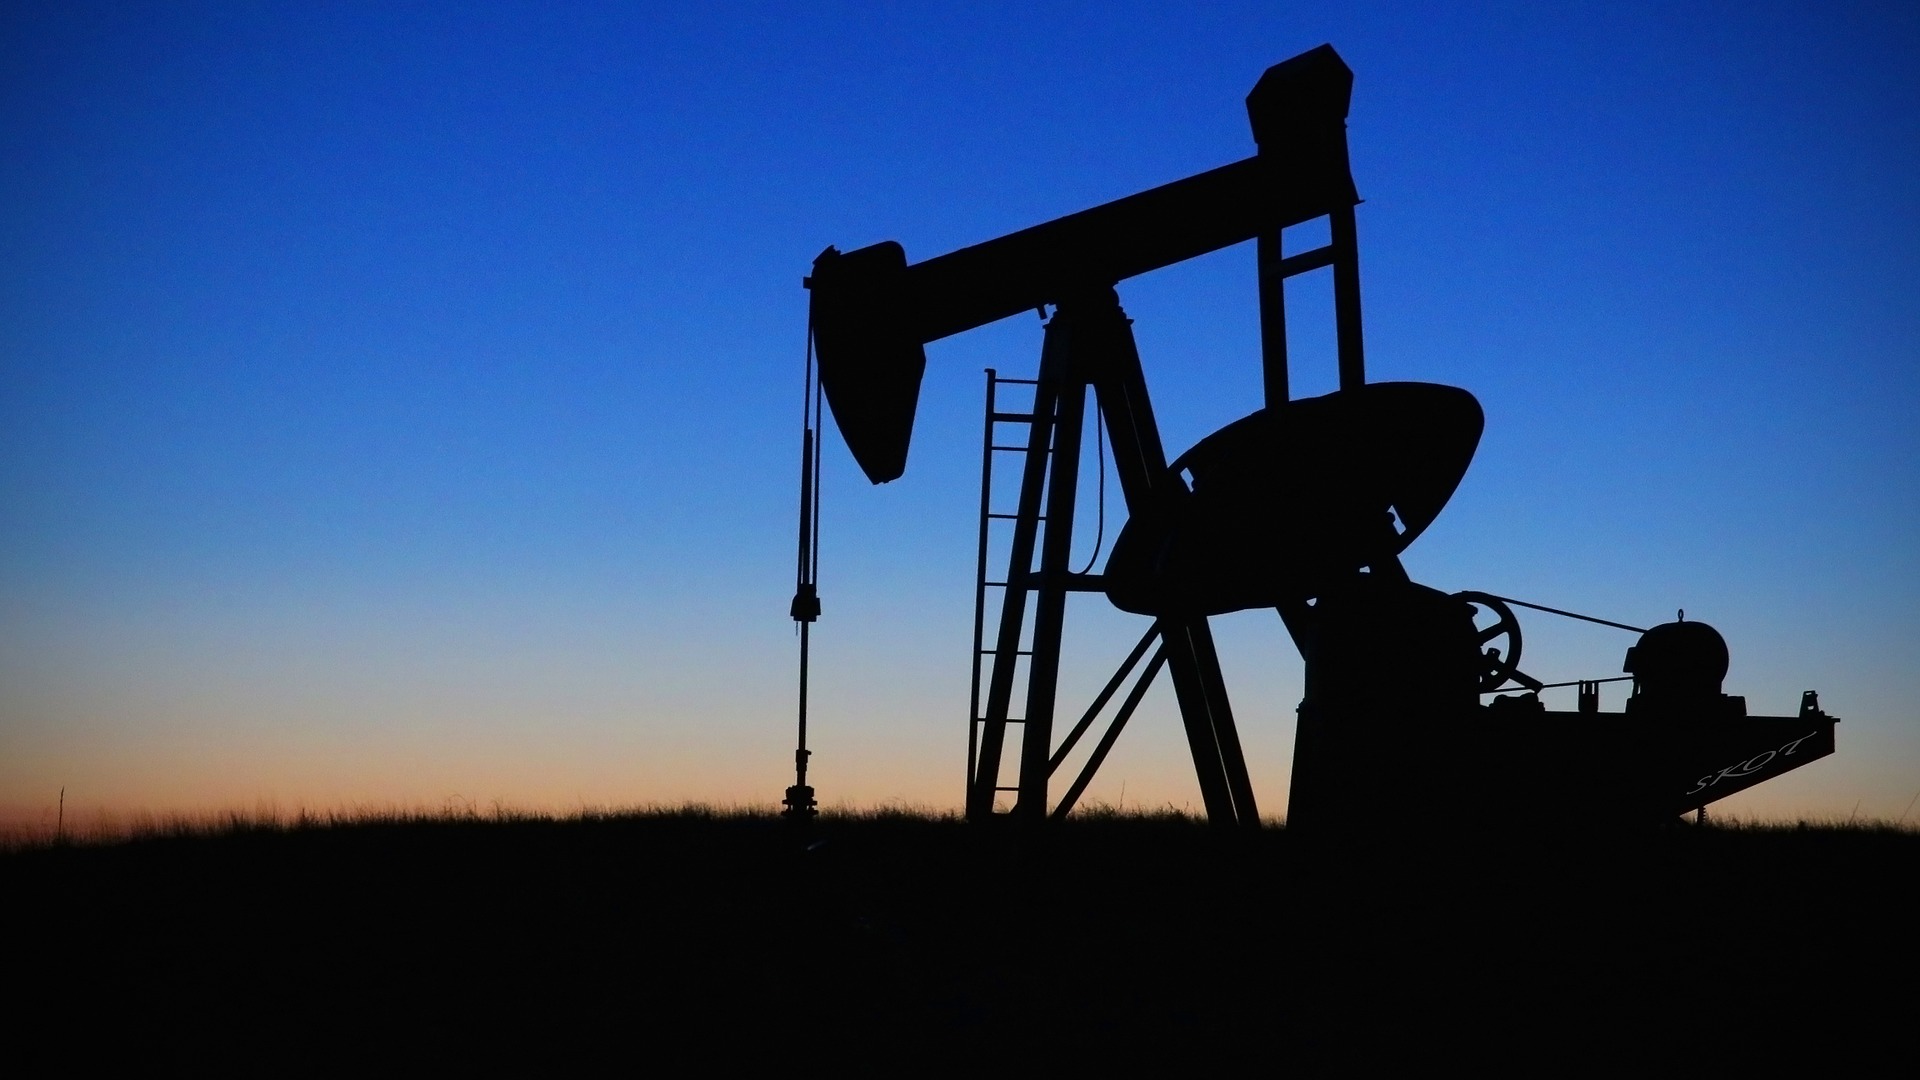 ЗАО «Нефтепром-сервис»: масштабирование производства